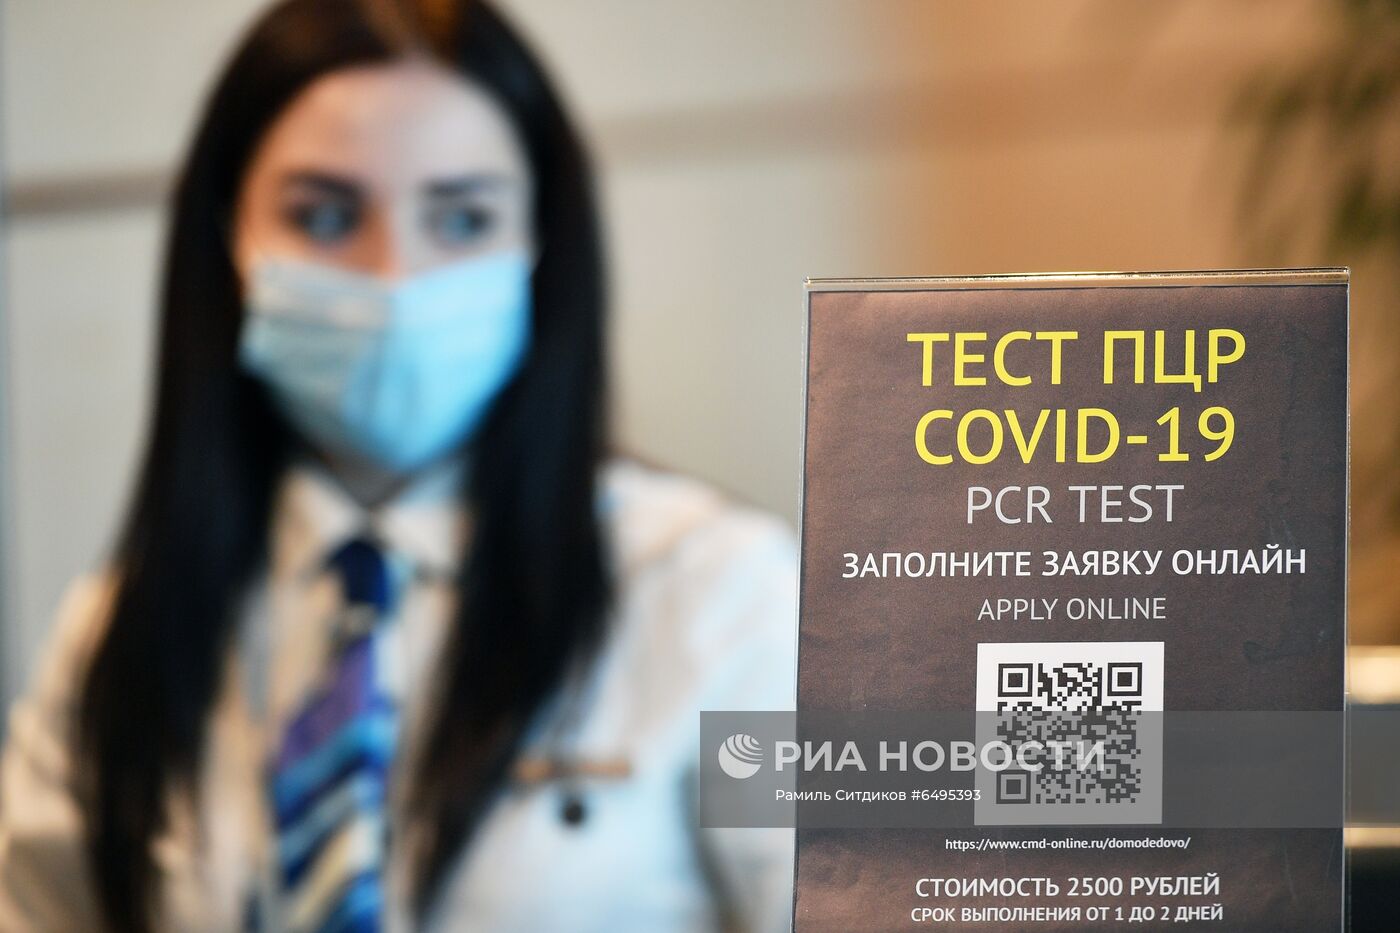 Выдача сертификатов международного образца о вакцинации от COVID-19 в аэропорту Домодедово